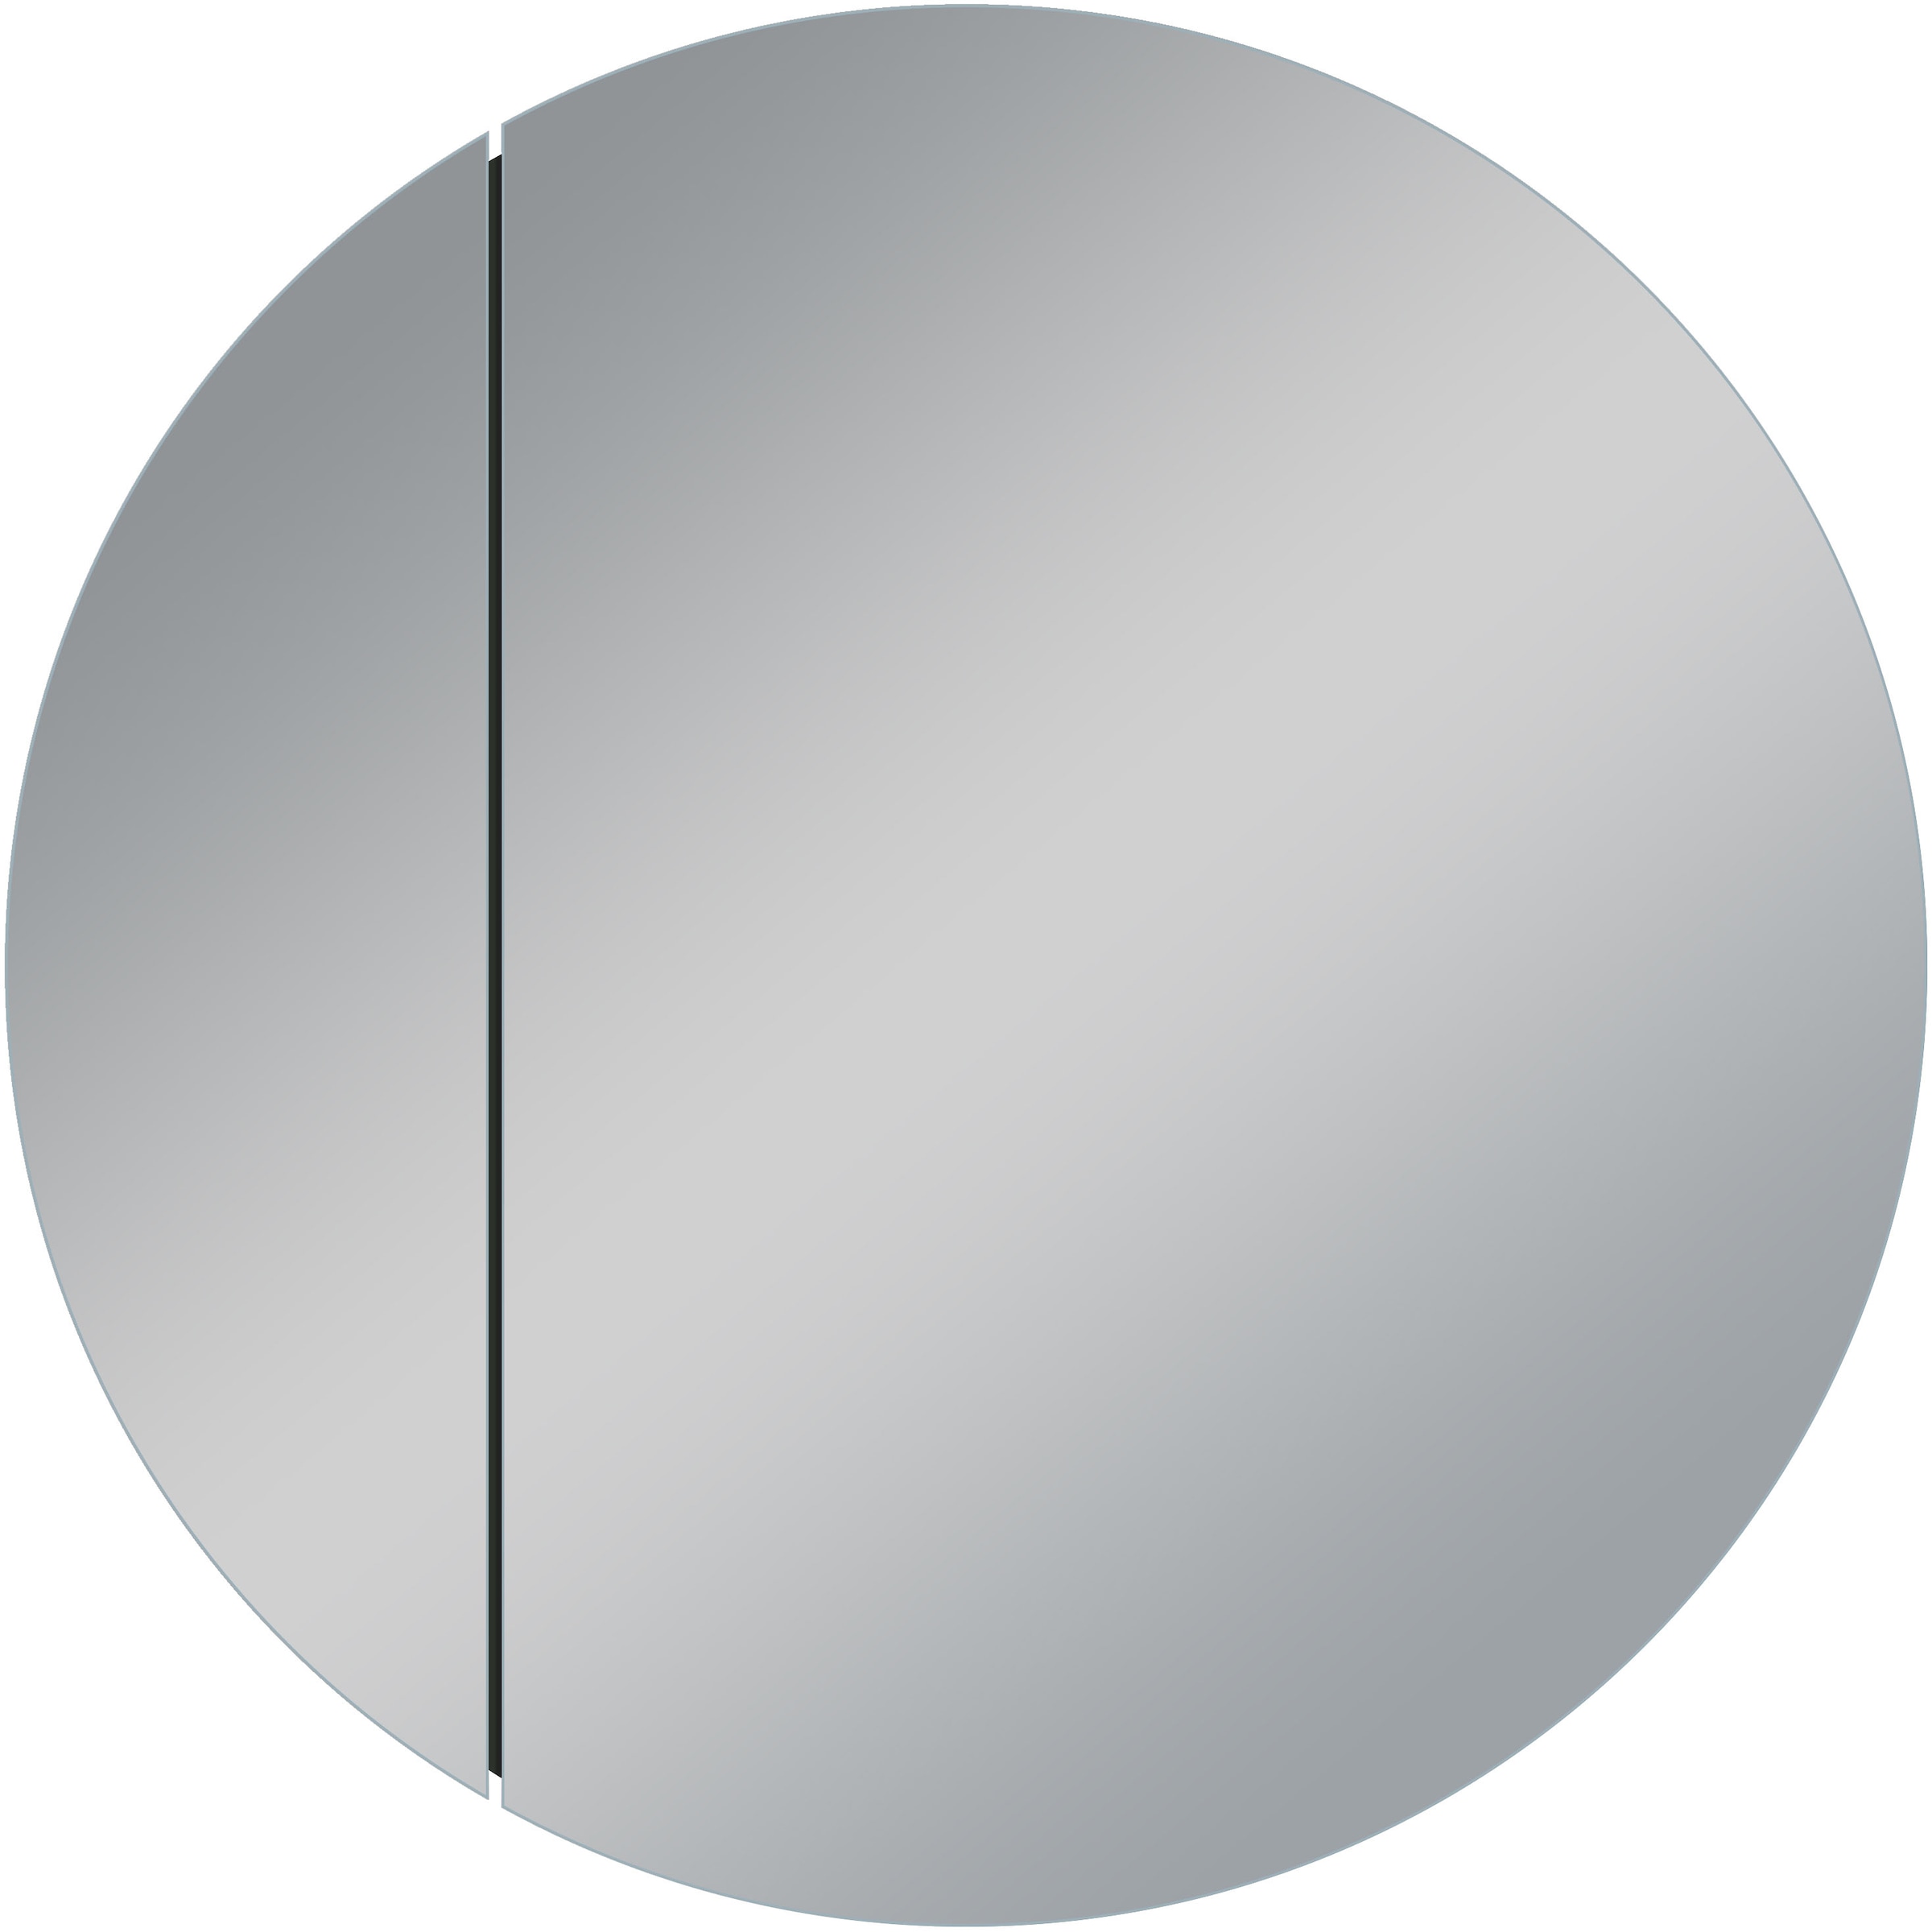 Talos Spiegelschrank »Picasso Style, weiß, Ø 60cm«, Rahmen aus hochwertiger Aluminiumlegierung